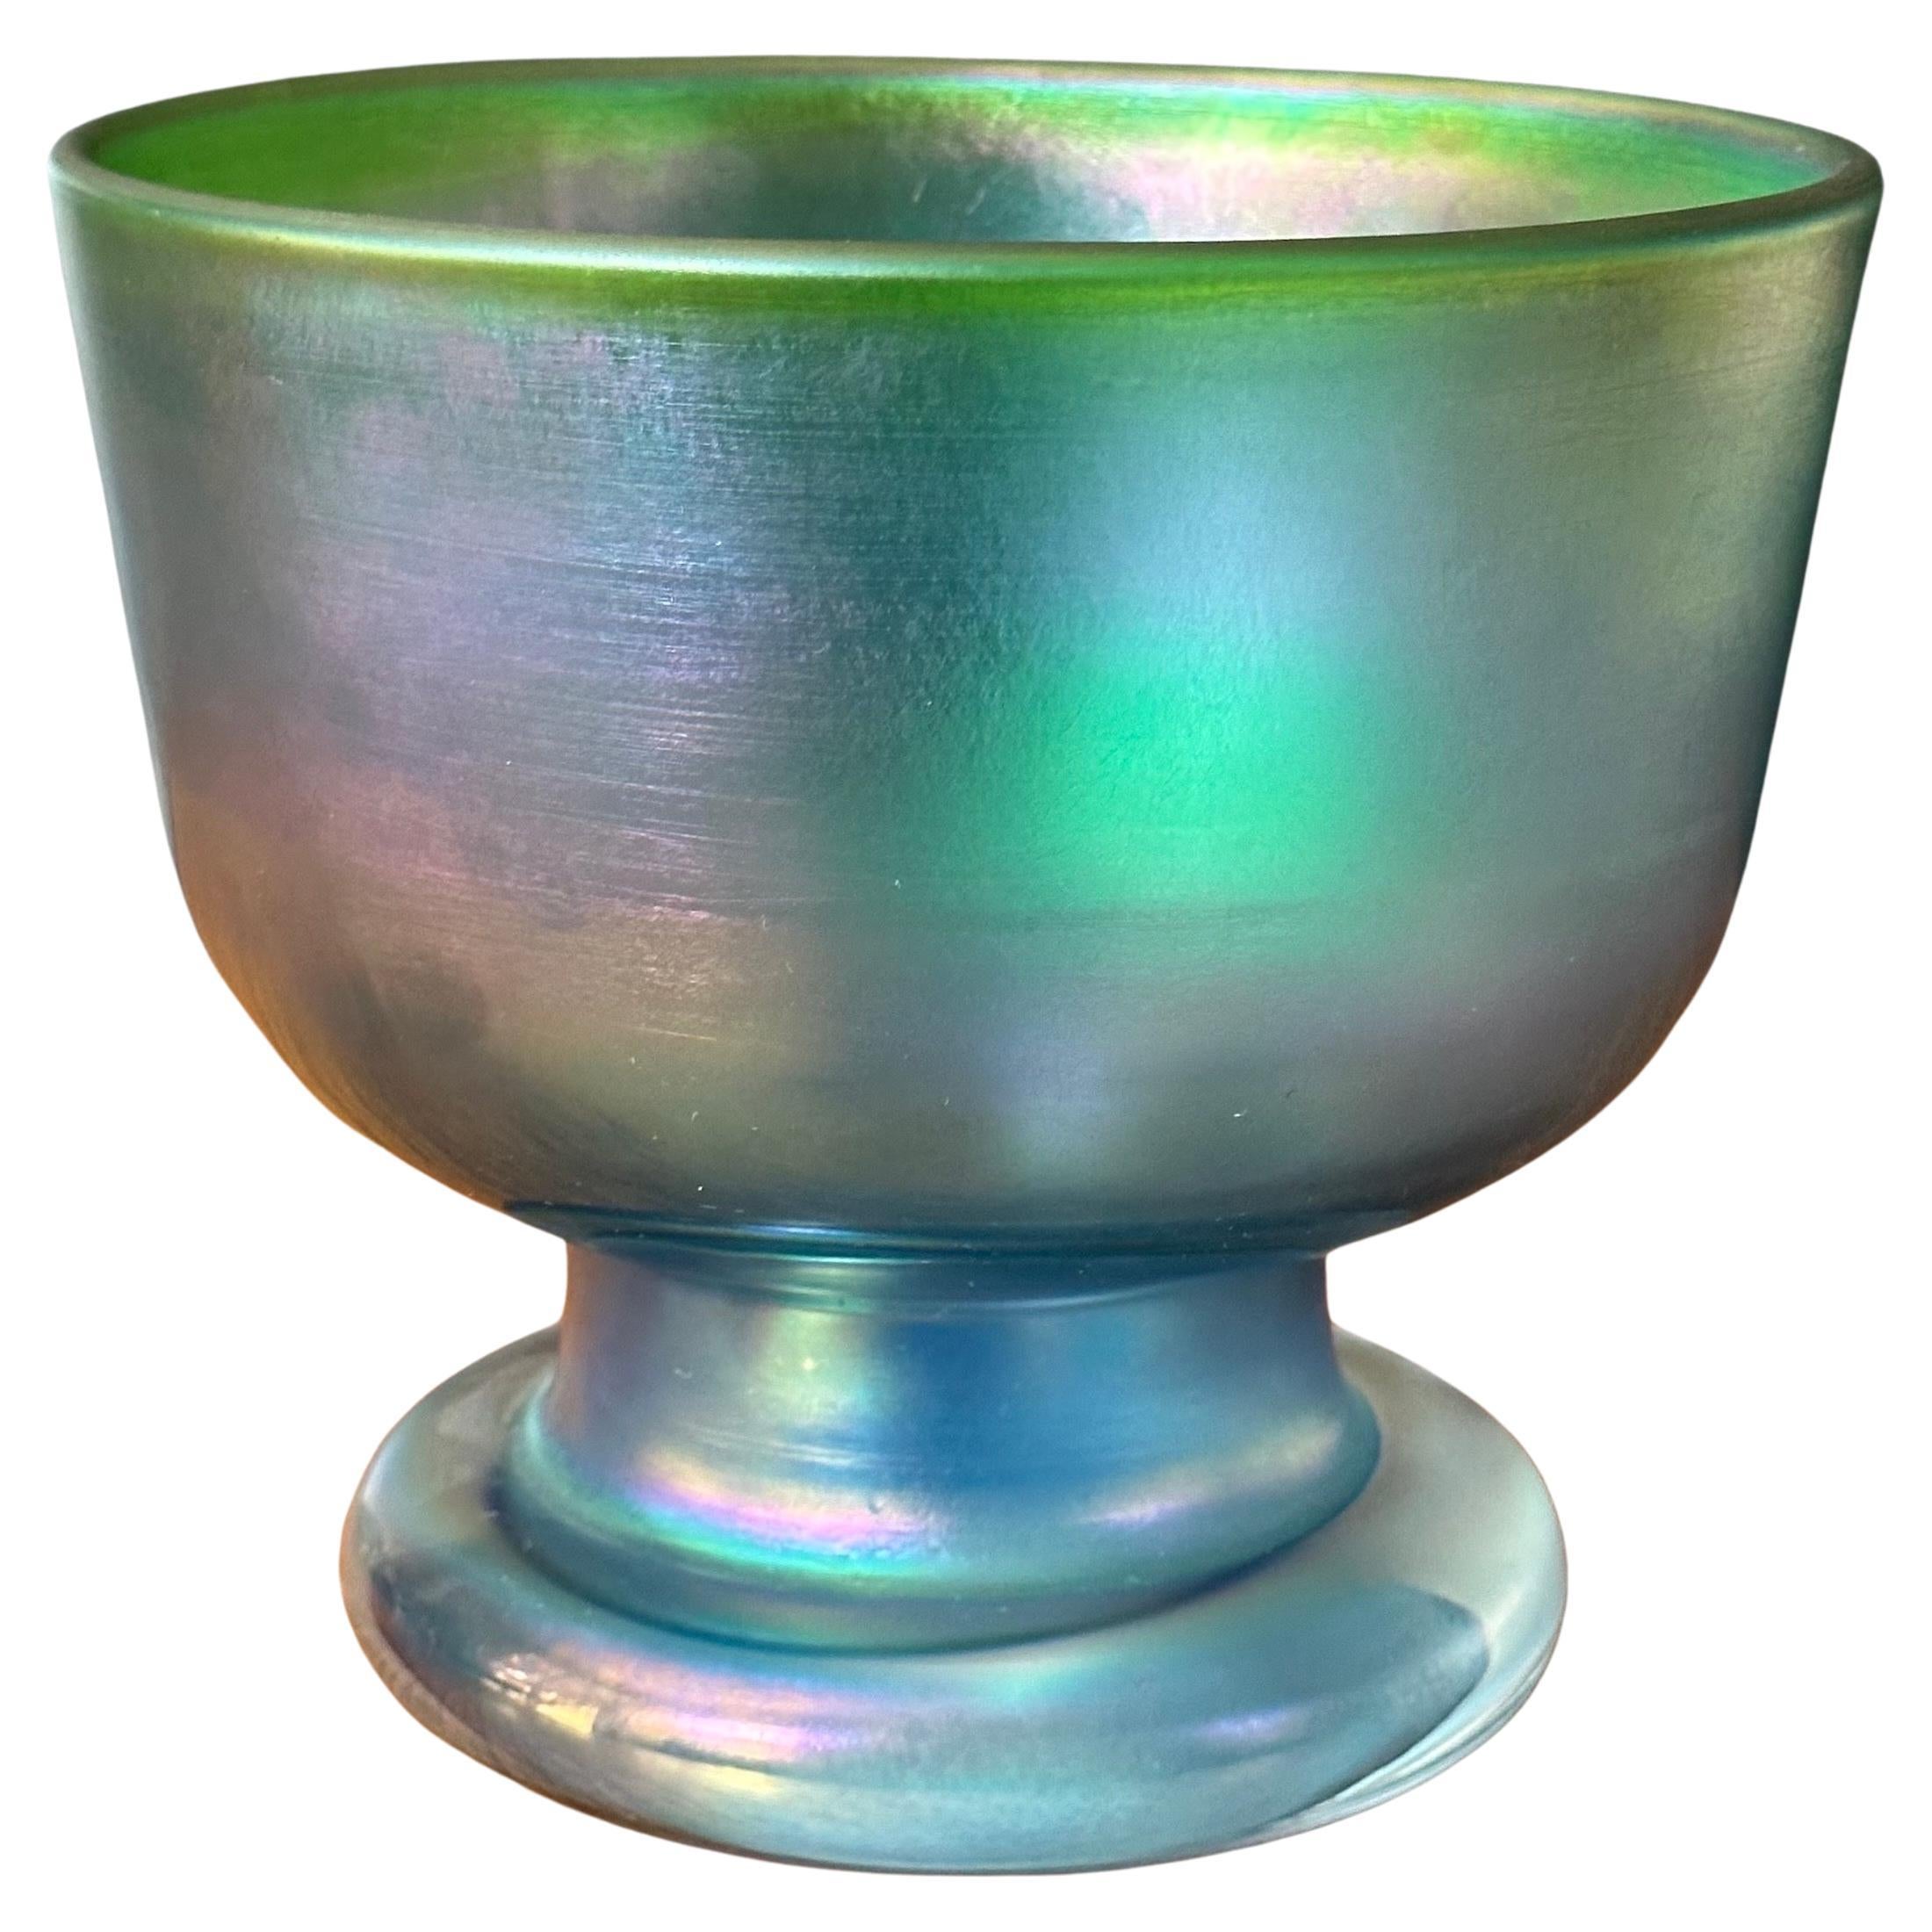 Iridescent Footed Art Glass Vase / Bowl by Bertil Vallien for Boda Abfors For Sale